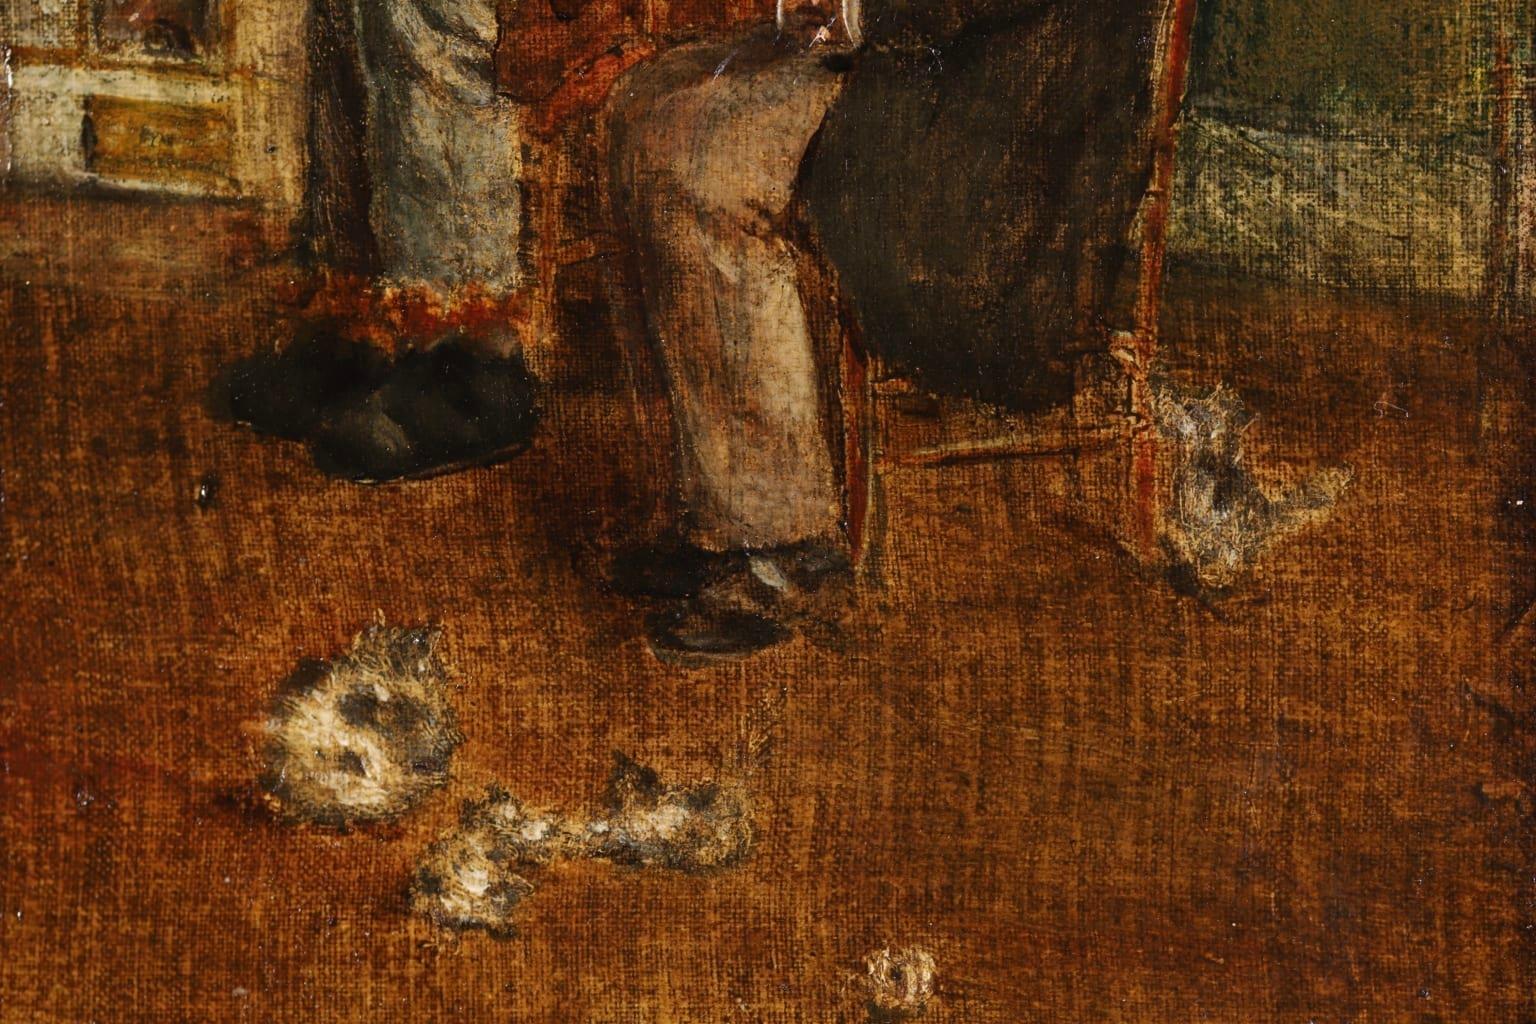 Ein wunderschönes Ölgemälde des französischen impressionistischen Malers Jean-Francois Raffaelli, das zwei alte Männer in einem Interieur zeigt. Der eine liest seine Zeitung, während der andere ein Nickerchen macht, und auf dem Boden liegen mehrere